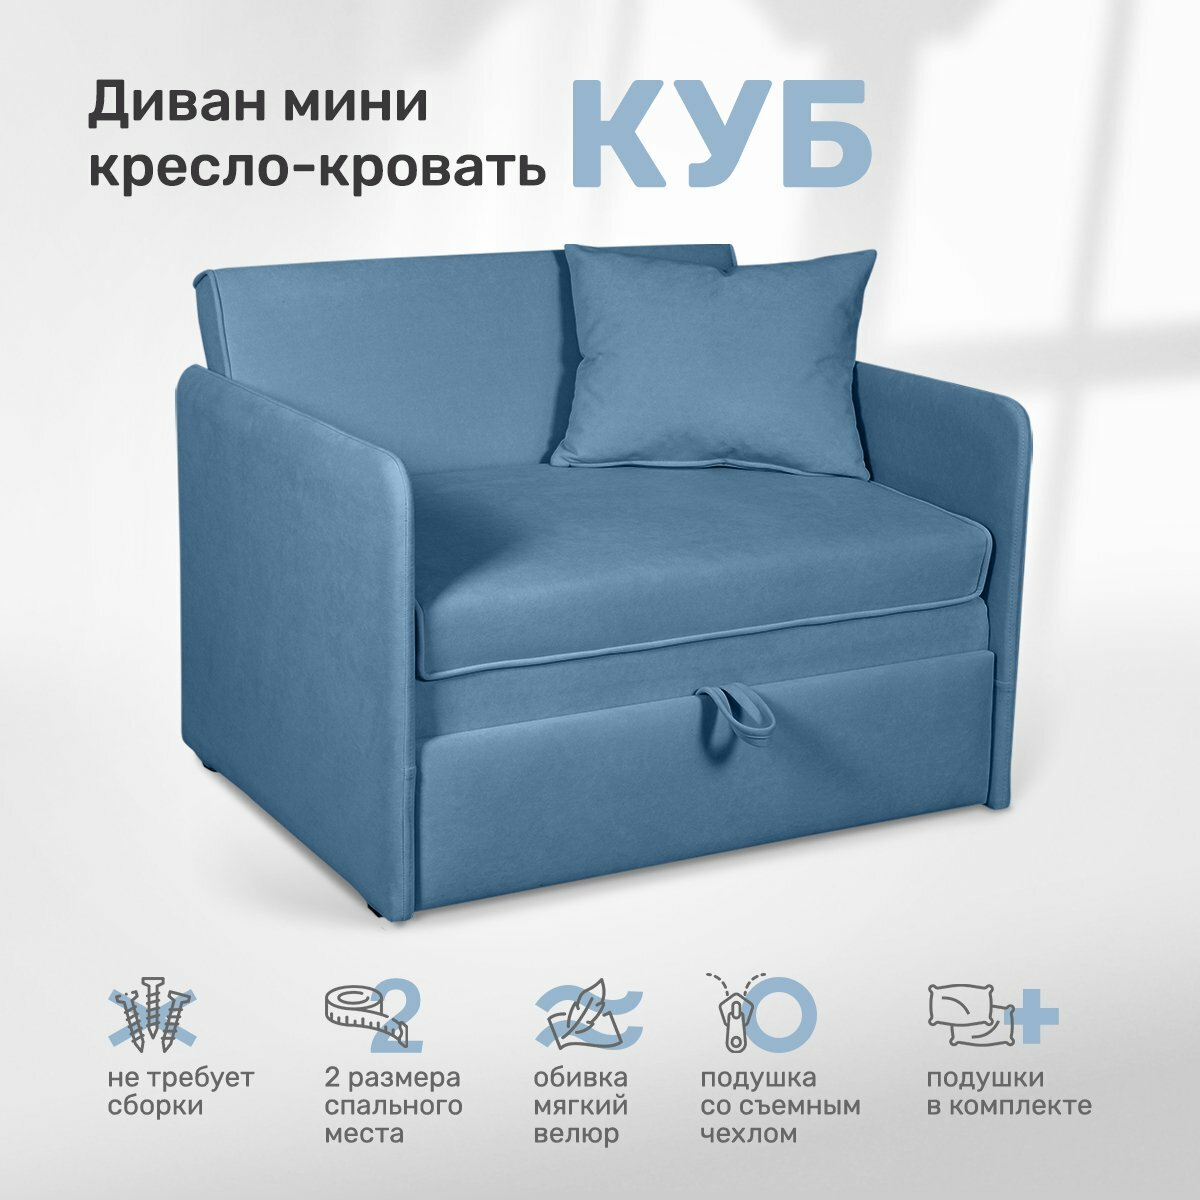 Детский диван-кровать для комфортного отдыха и сна "Куб",